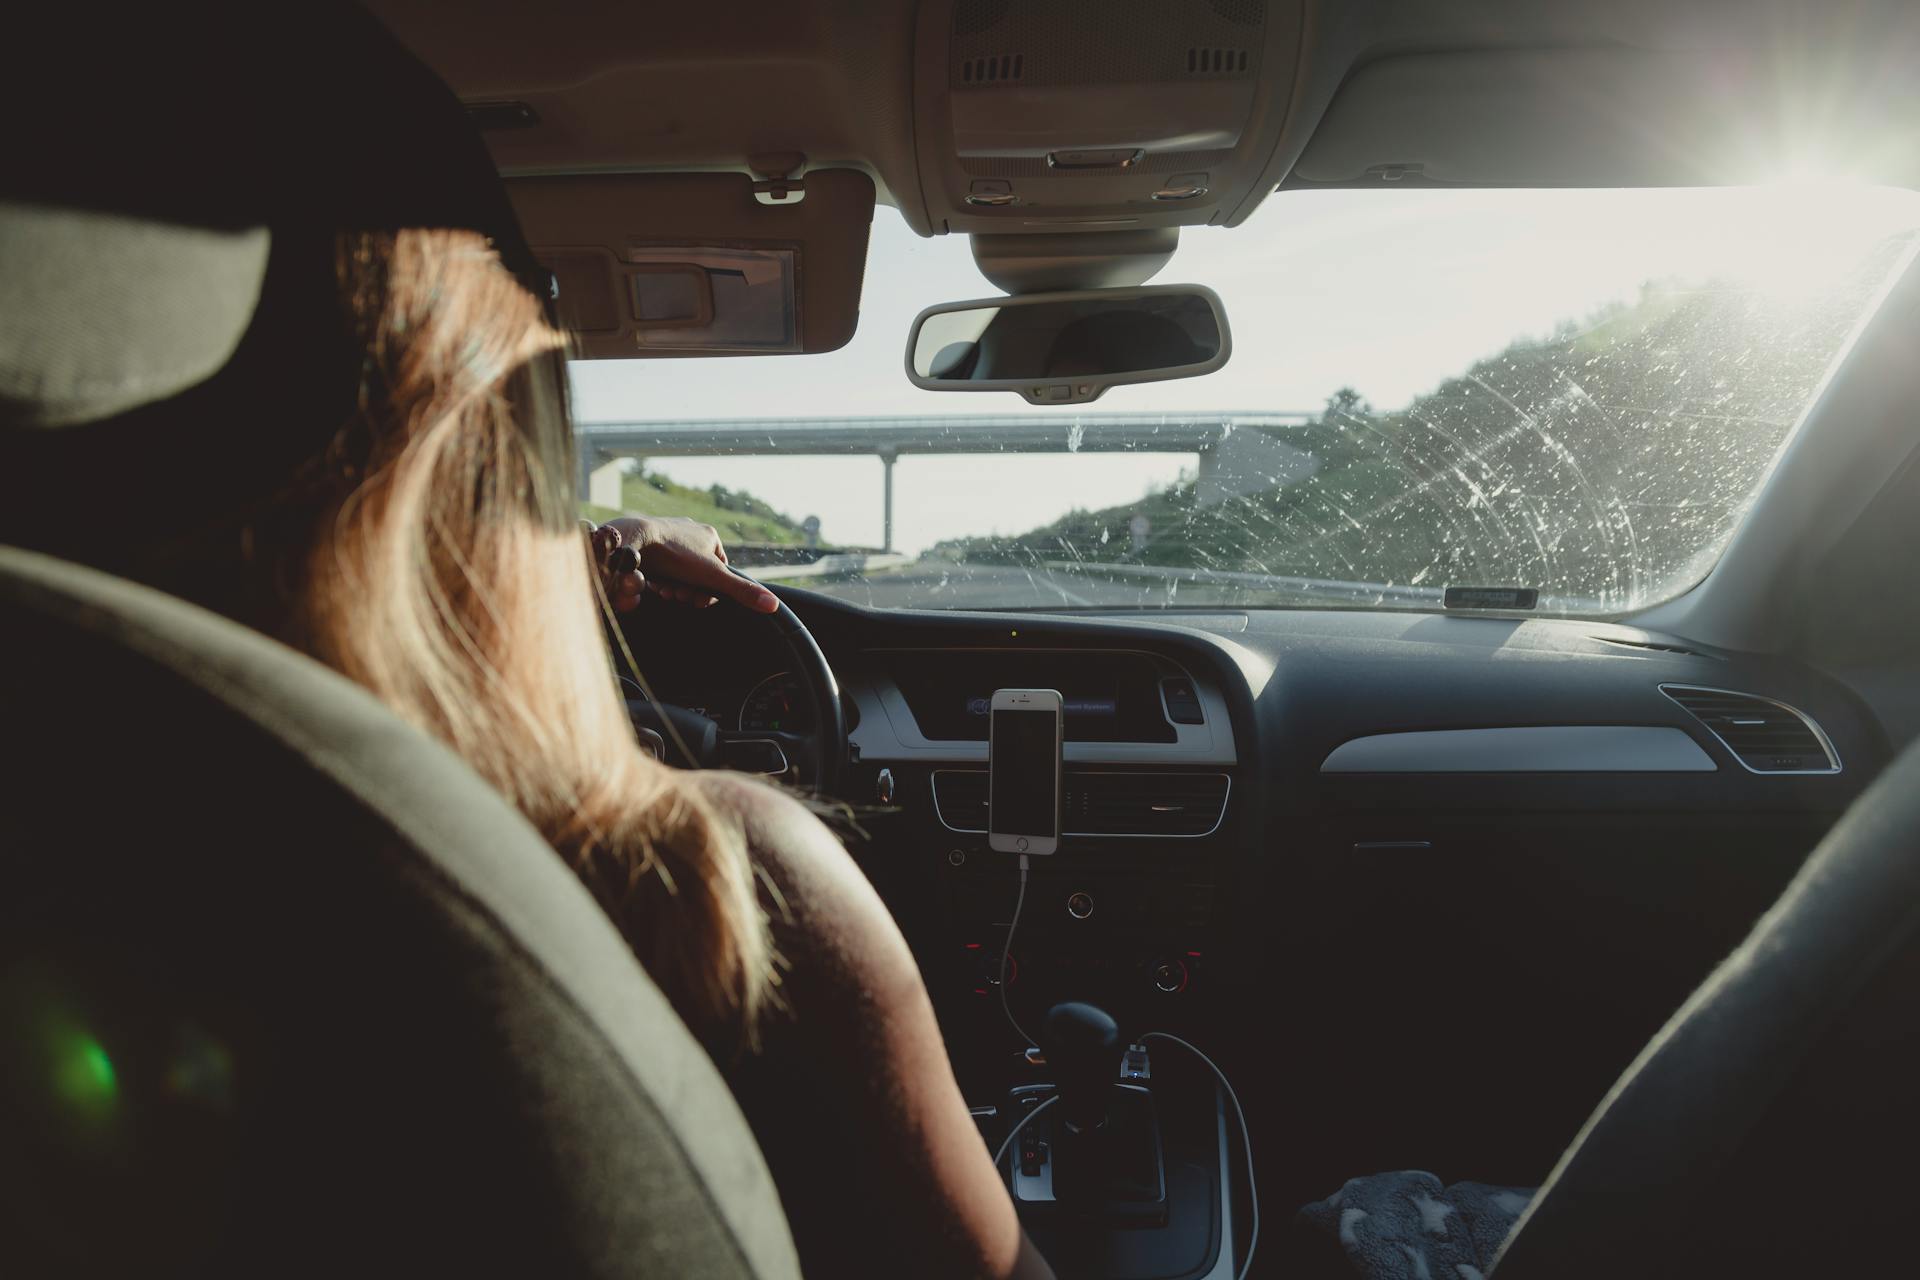 Mujer conduciendo. Imagen con fines ilustrativos | Fuente: Pexels